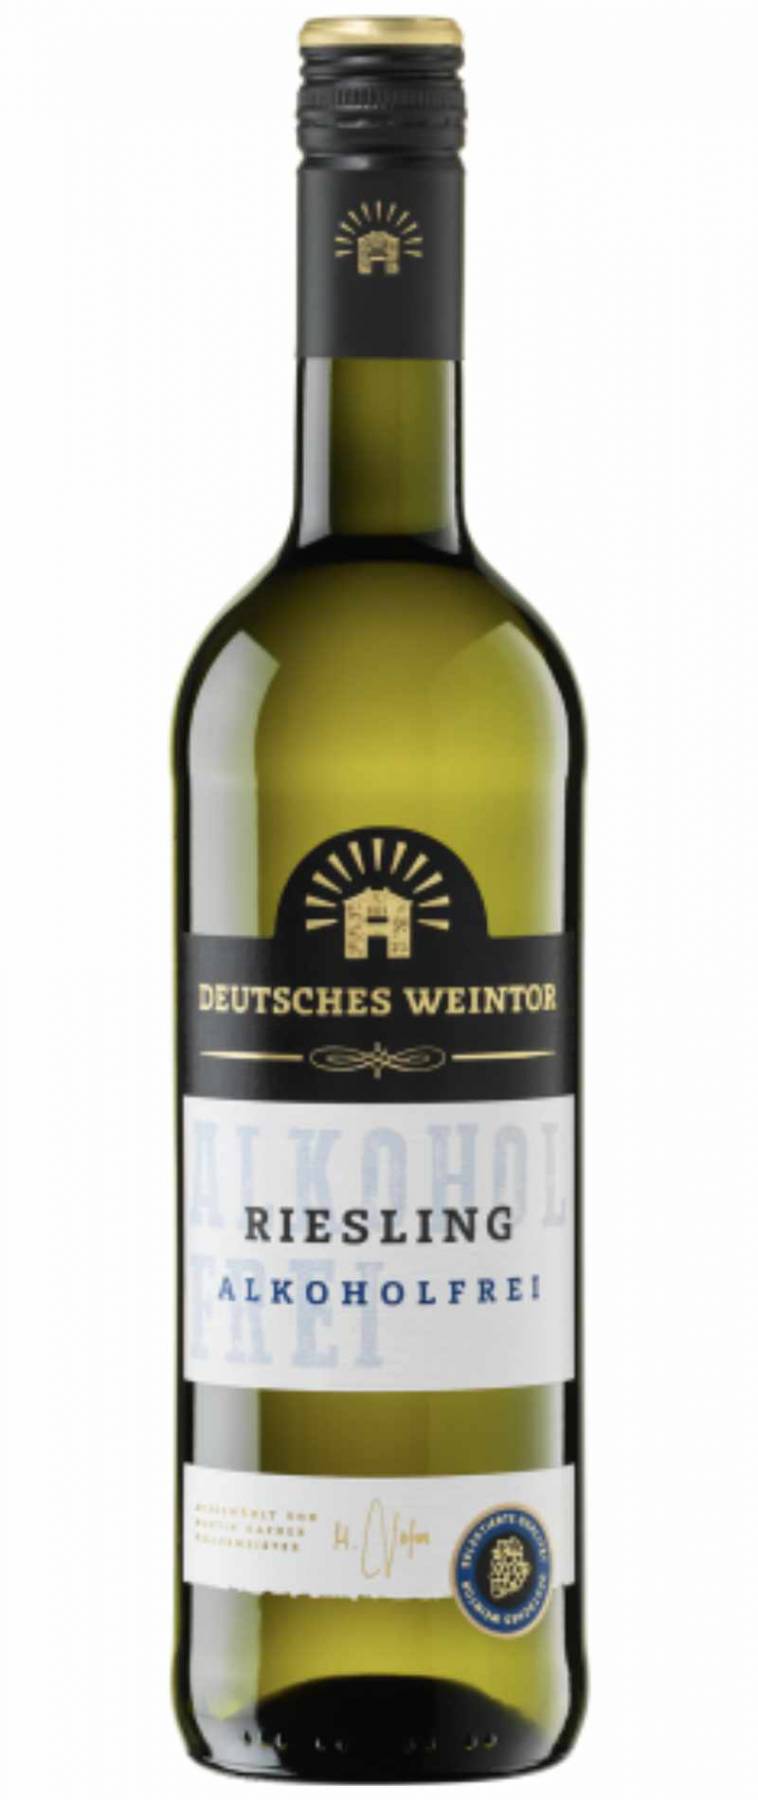 Weintor, Riesling alkoholfrei Deutsches